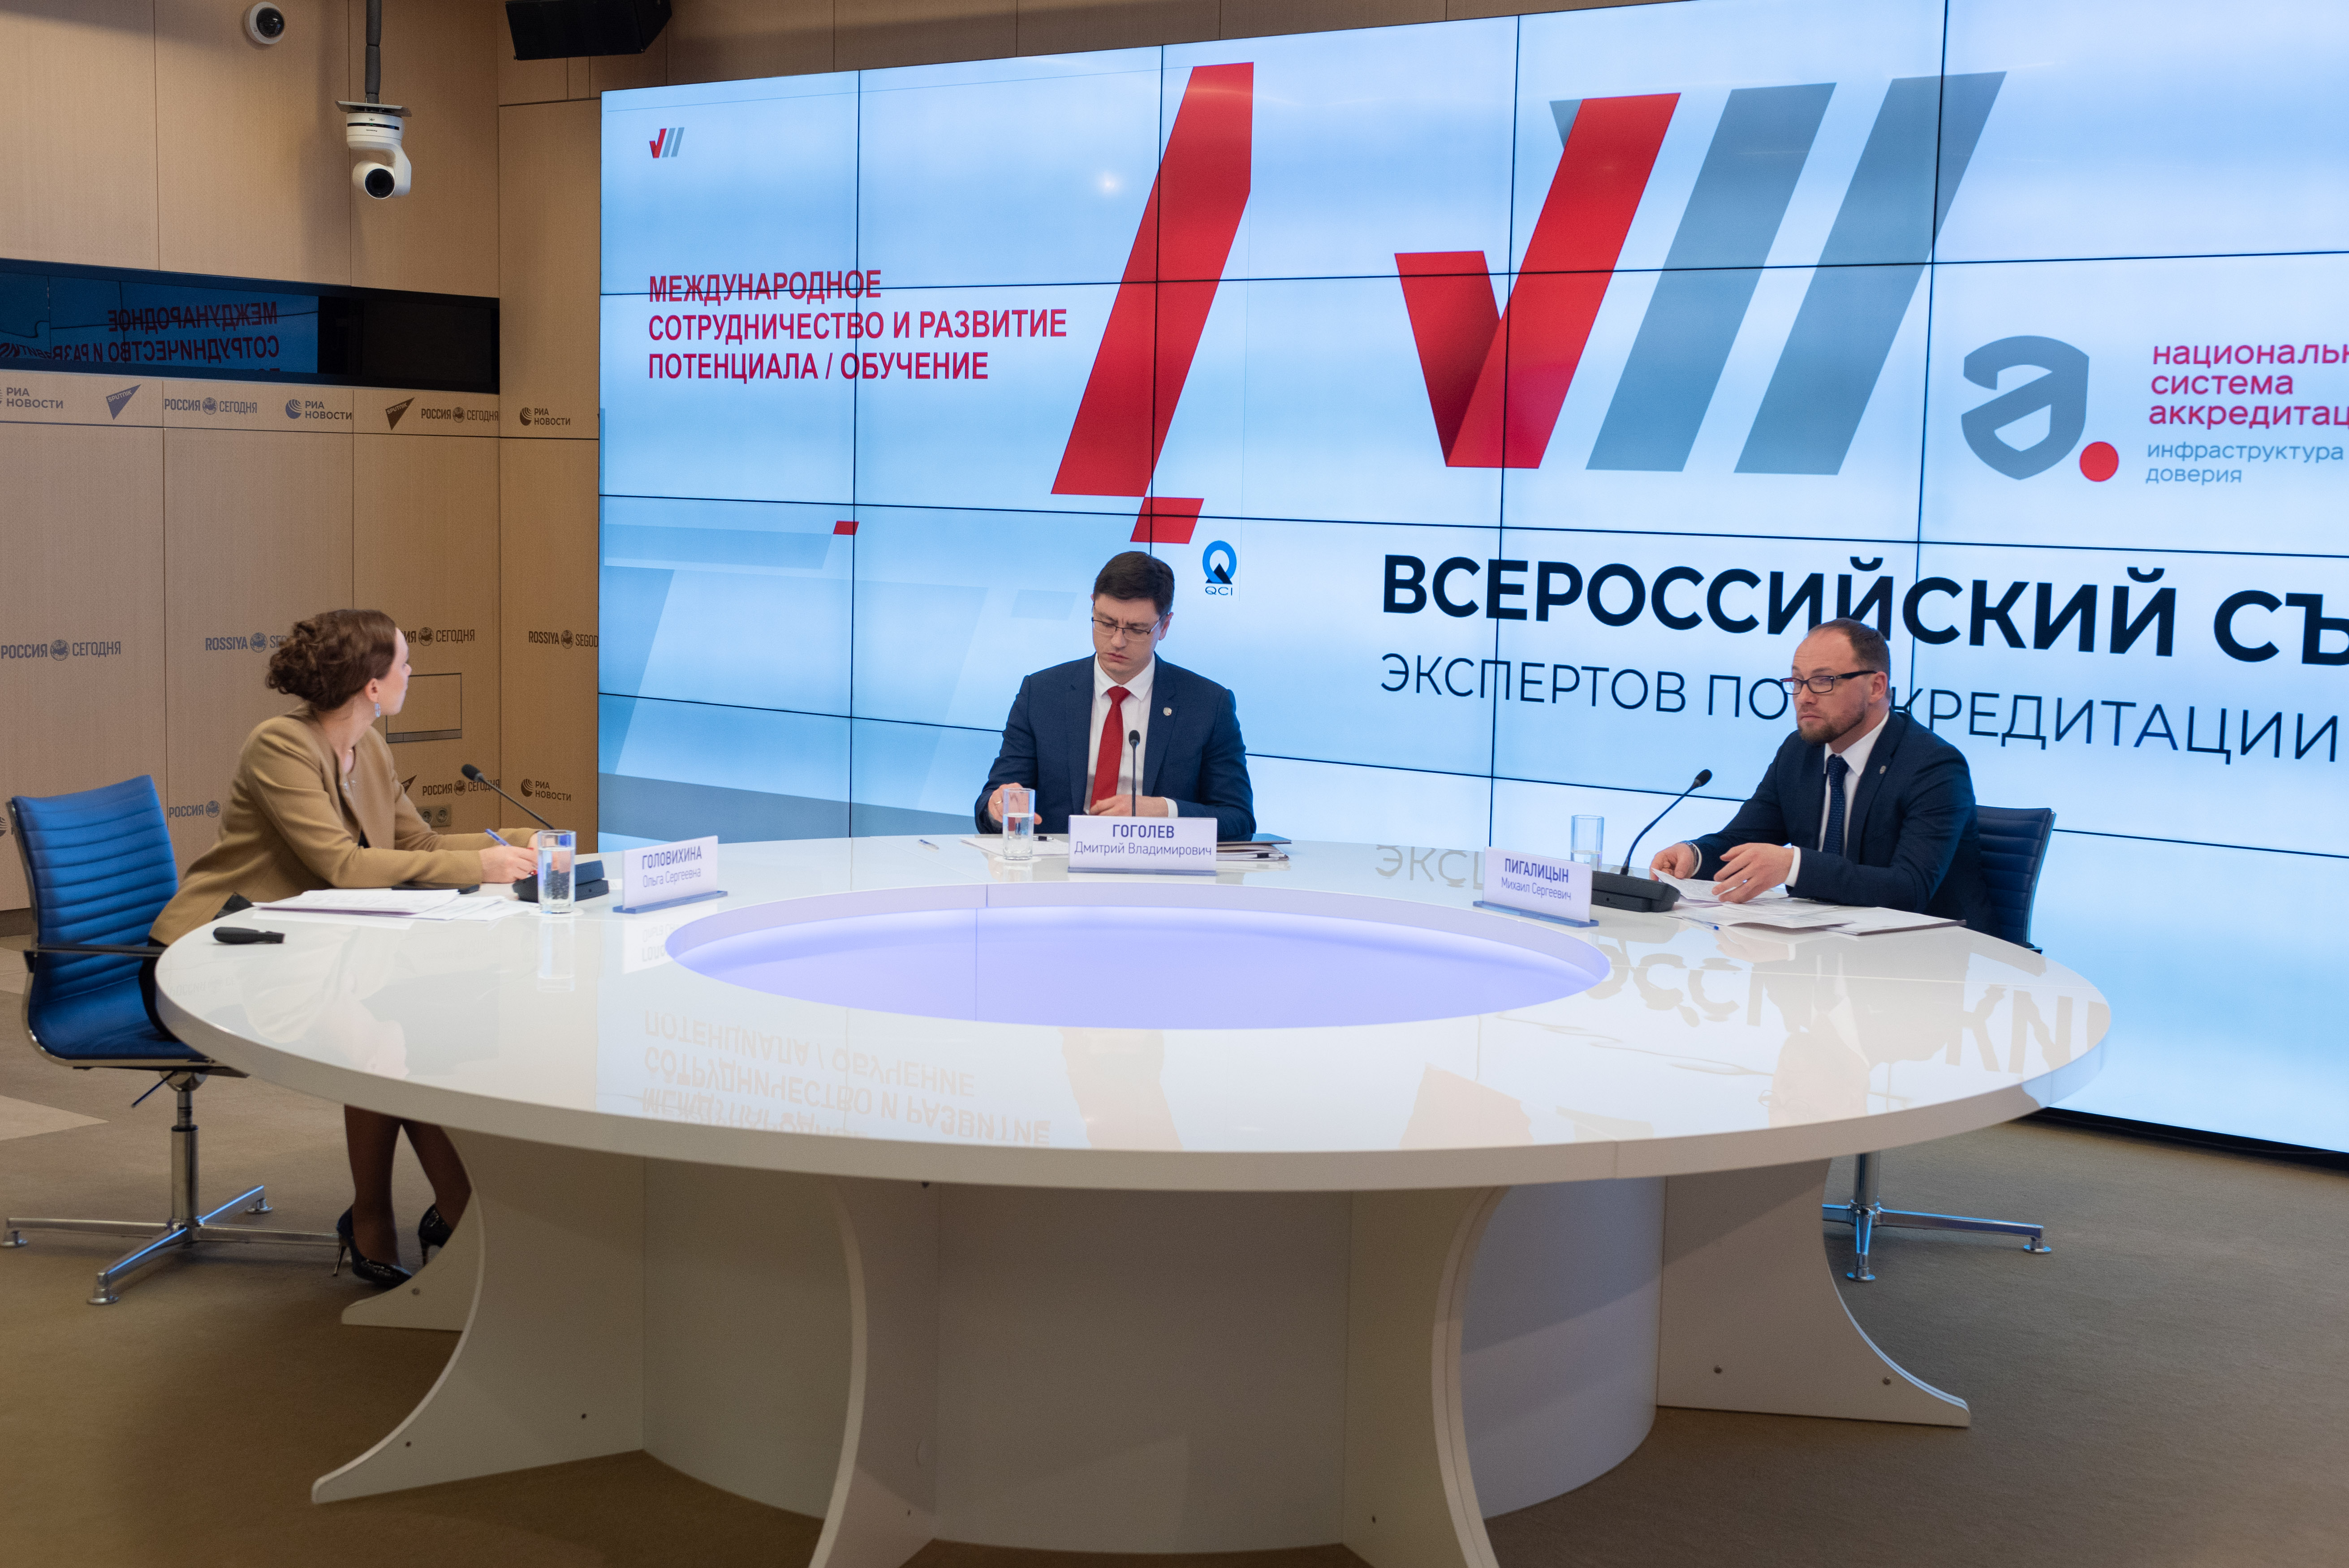 О международном опыте внедрения новых направлений аккредитации на VII Всероссийском съезде экспертов по аккредитации